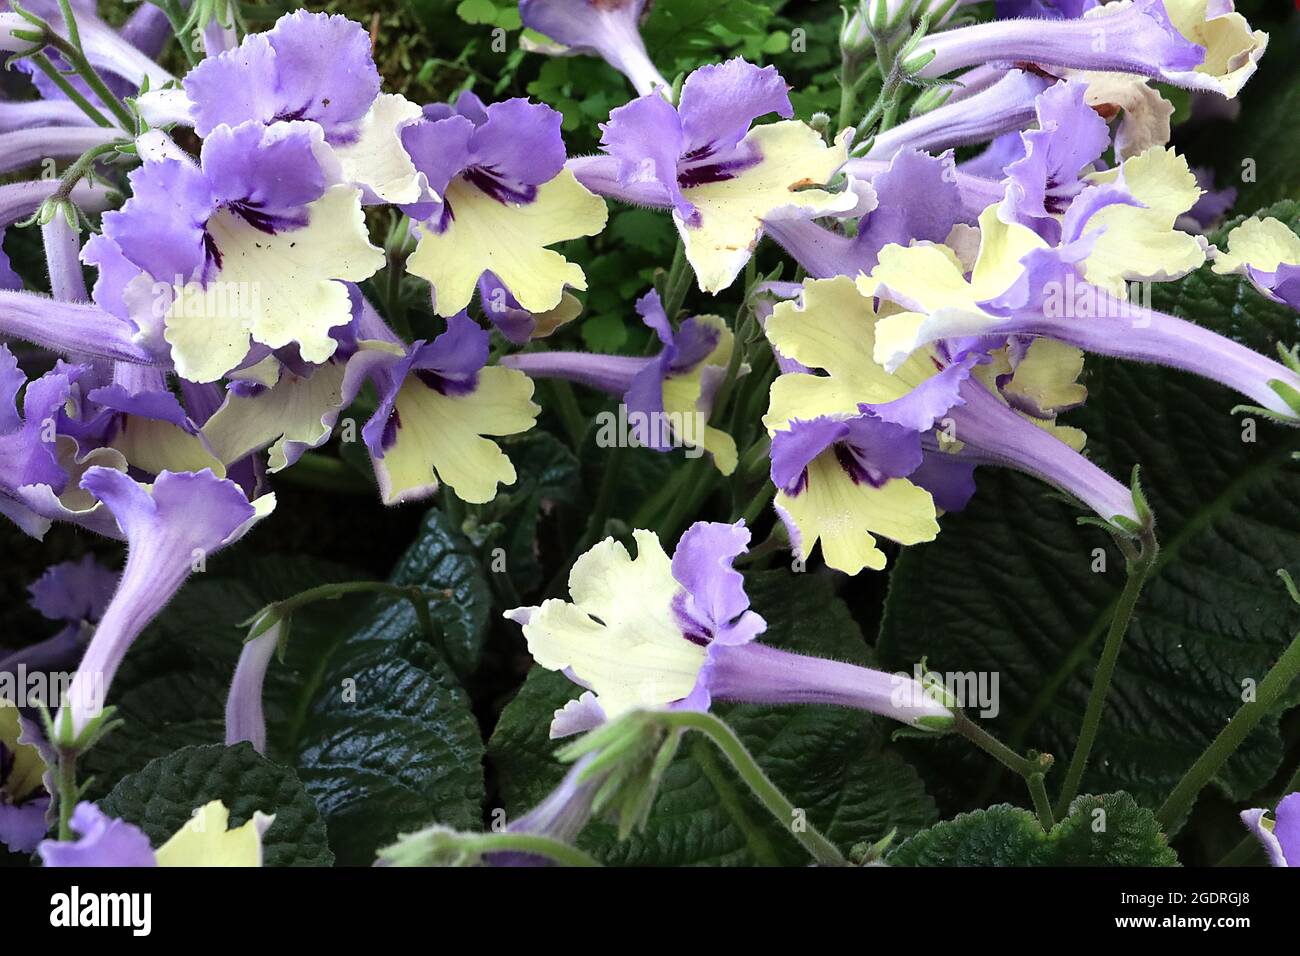 Streptocarpus ‘Arlequin Blue’ Cape primrose Arlequin Blue – bleu violet fleurs à fond plat, gorge jaune pâle avec bandes latérales violet foncé, Banque D'Images